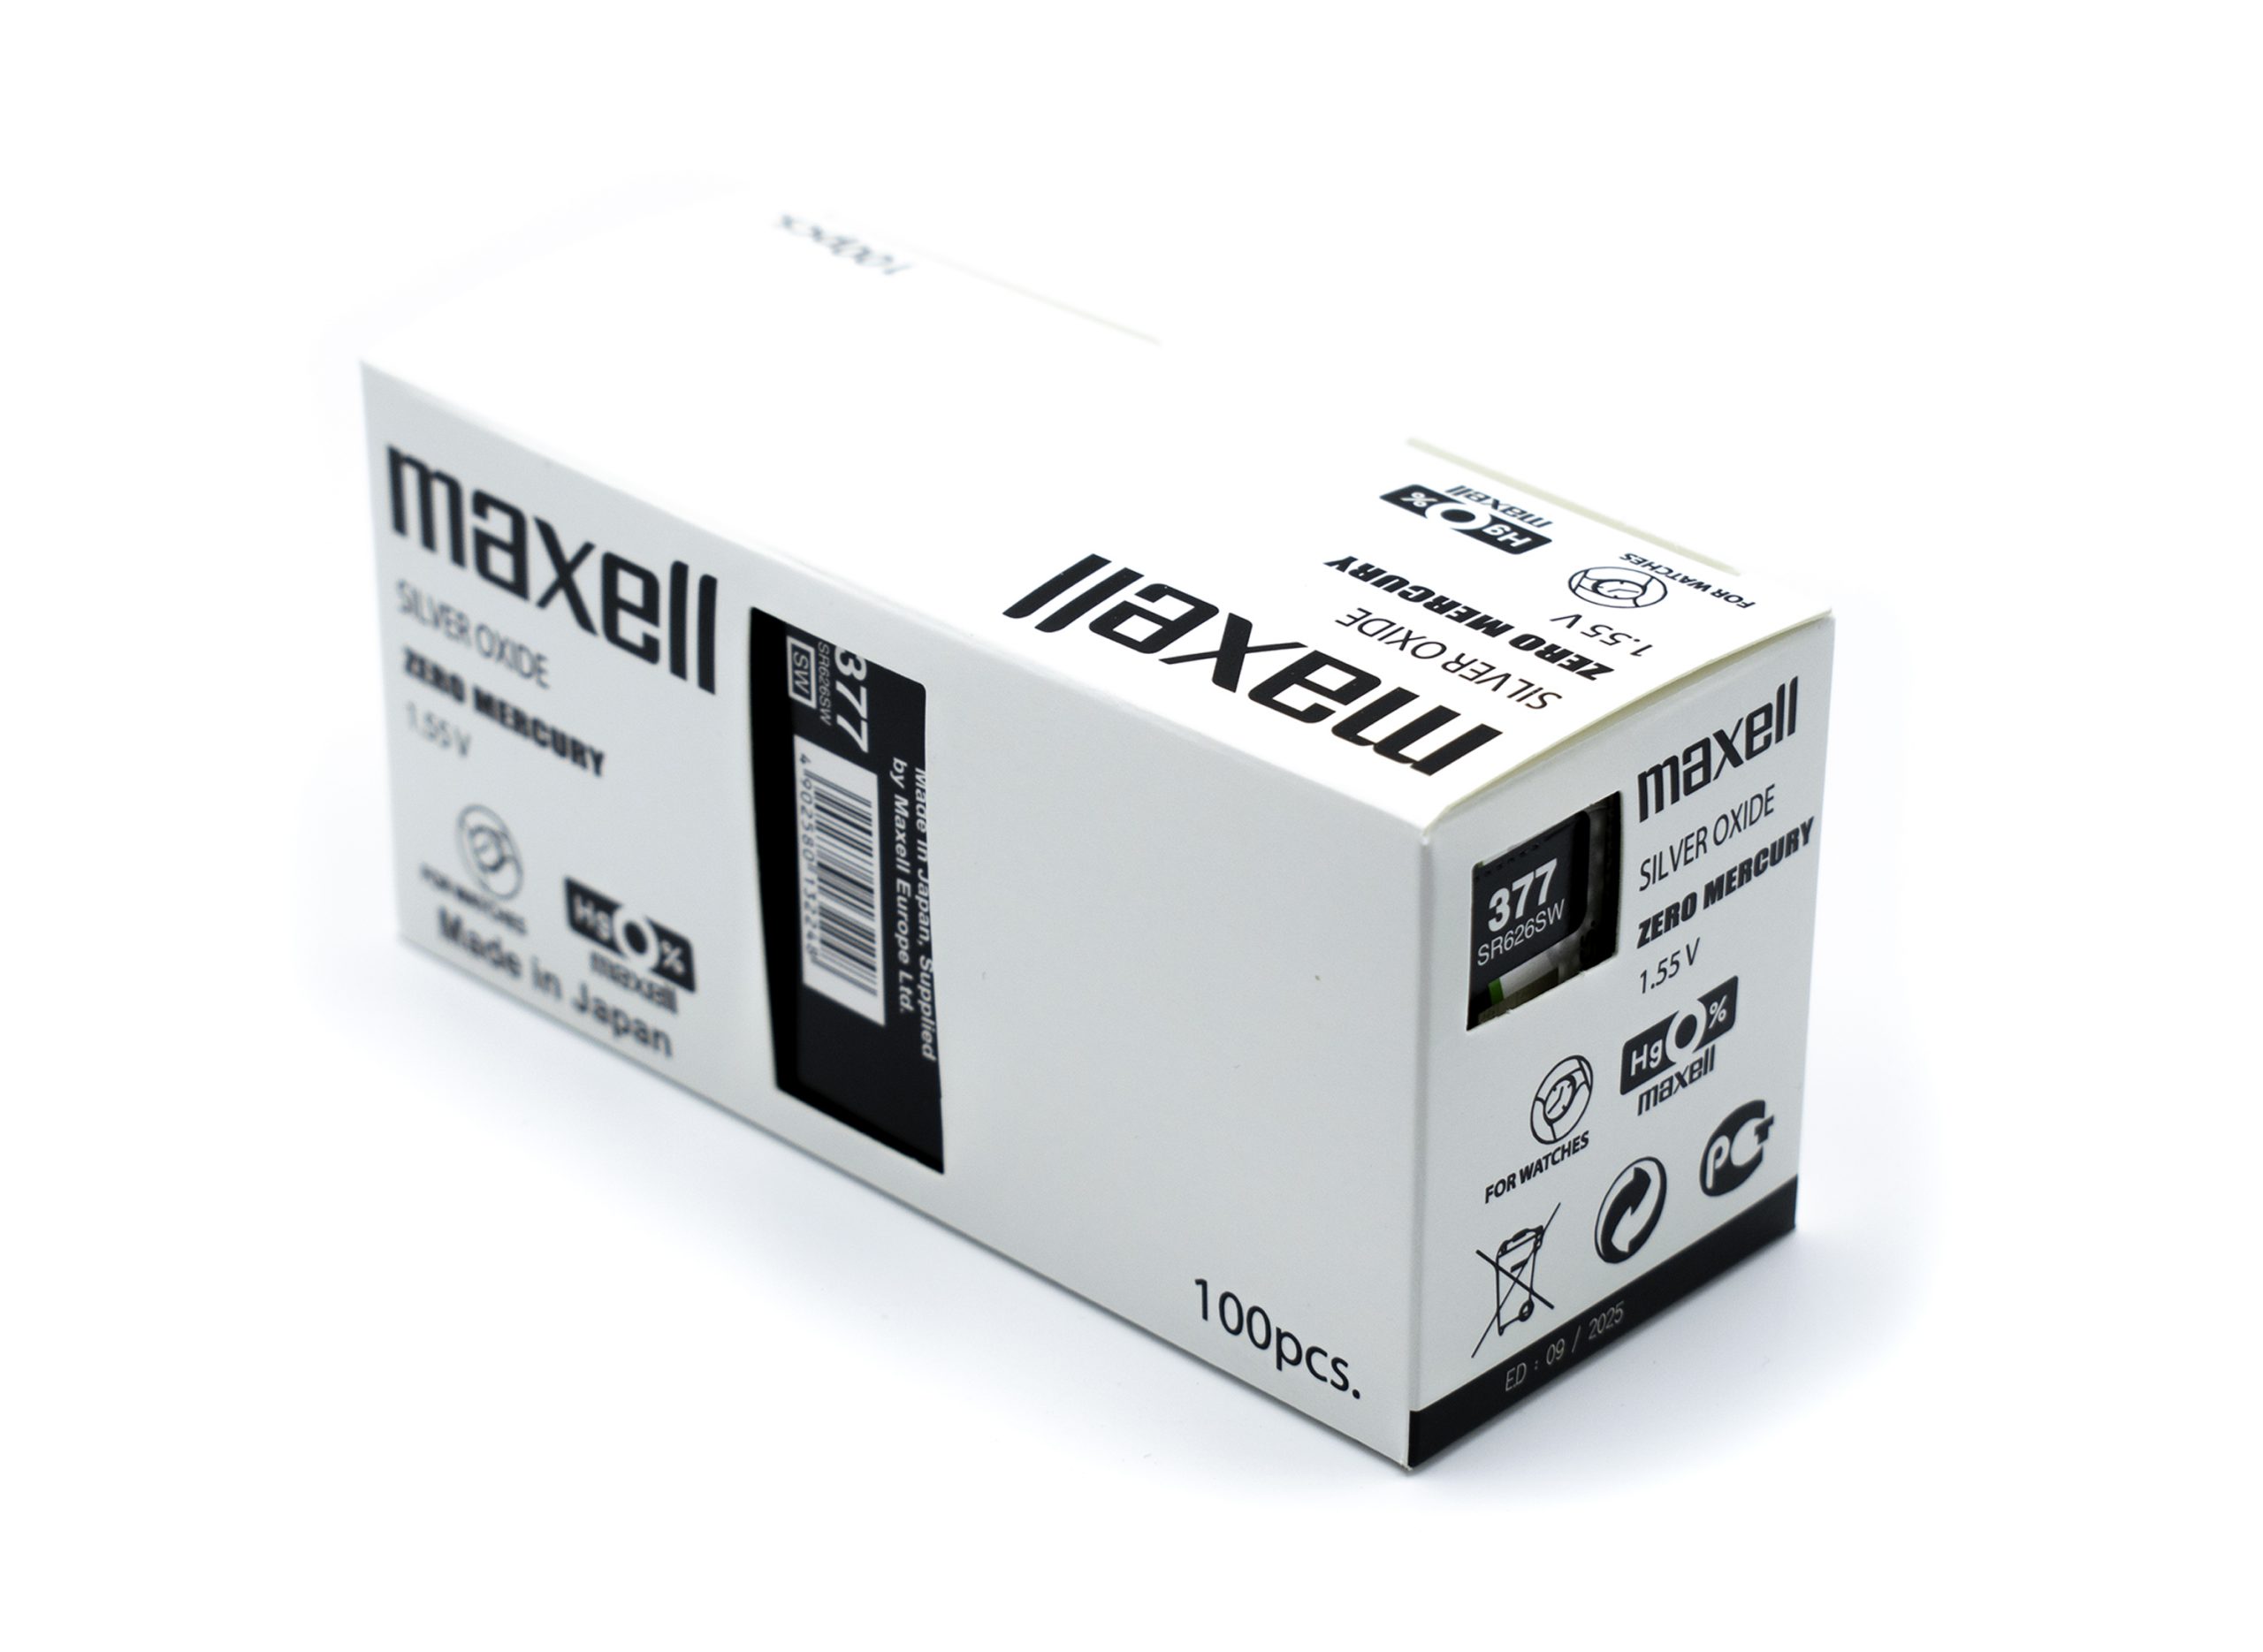 Pila Maxell SR626SW 377 1.55V Tipo Botón Pack De 5 Unidades